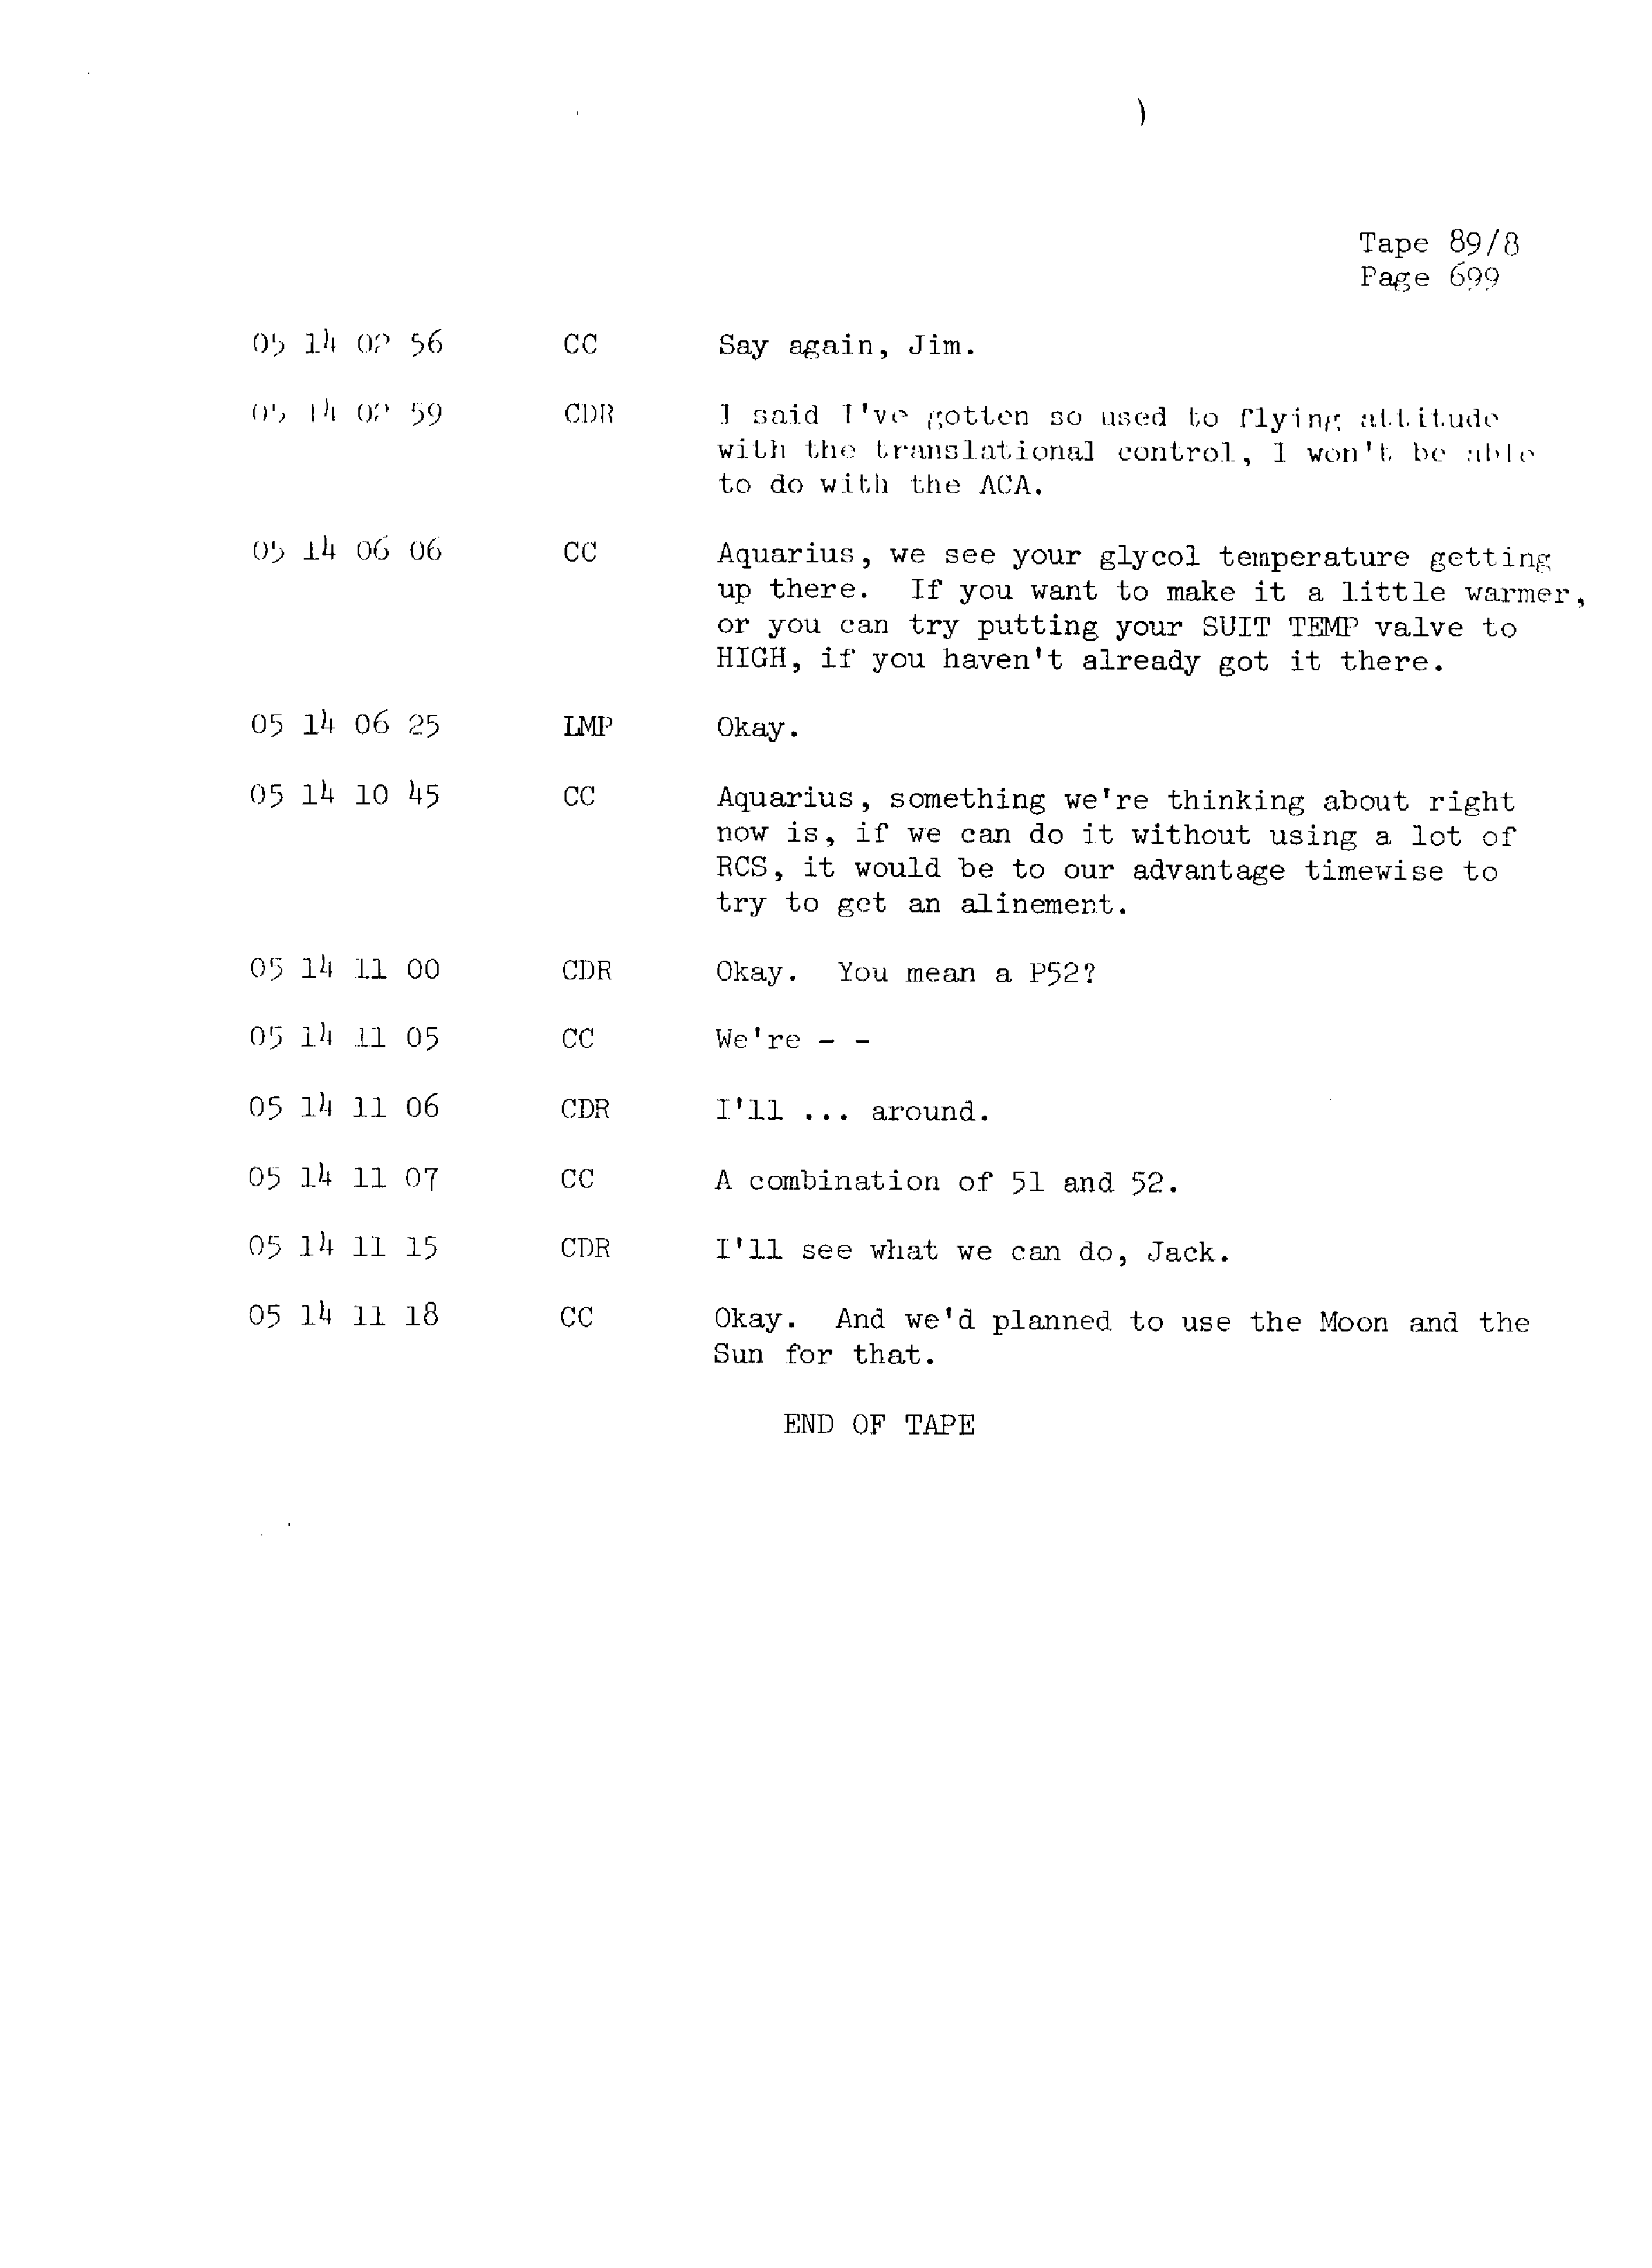 Page 706 of Apollo 13’s original transcript